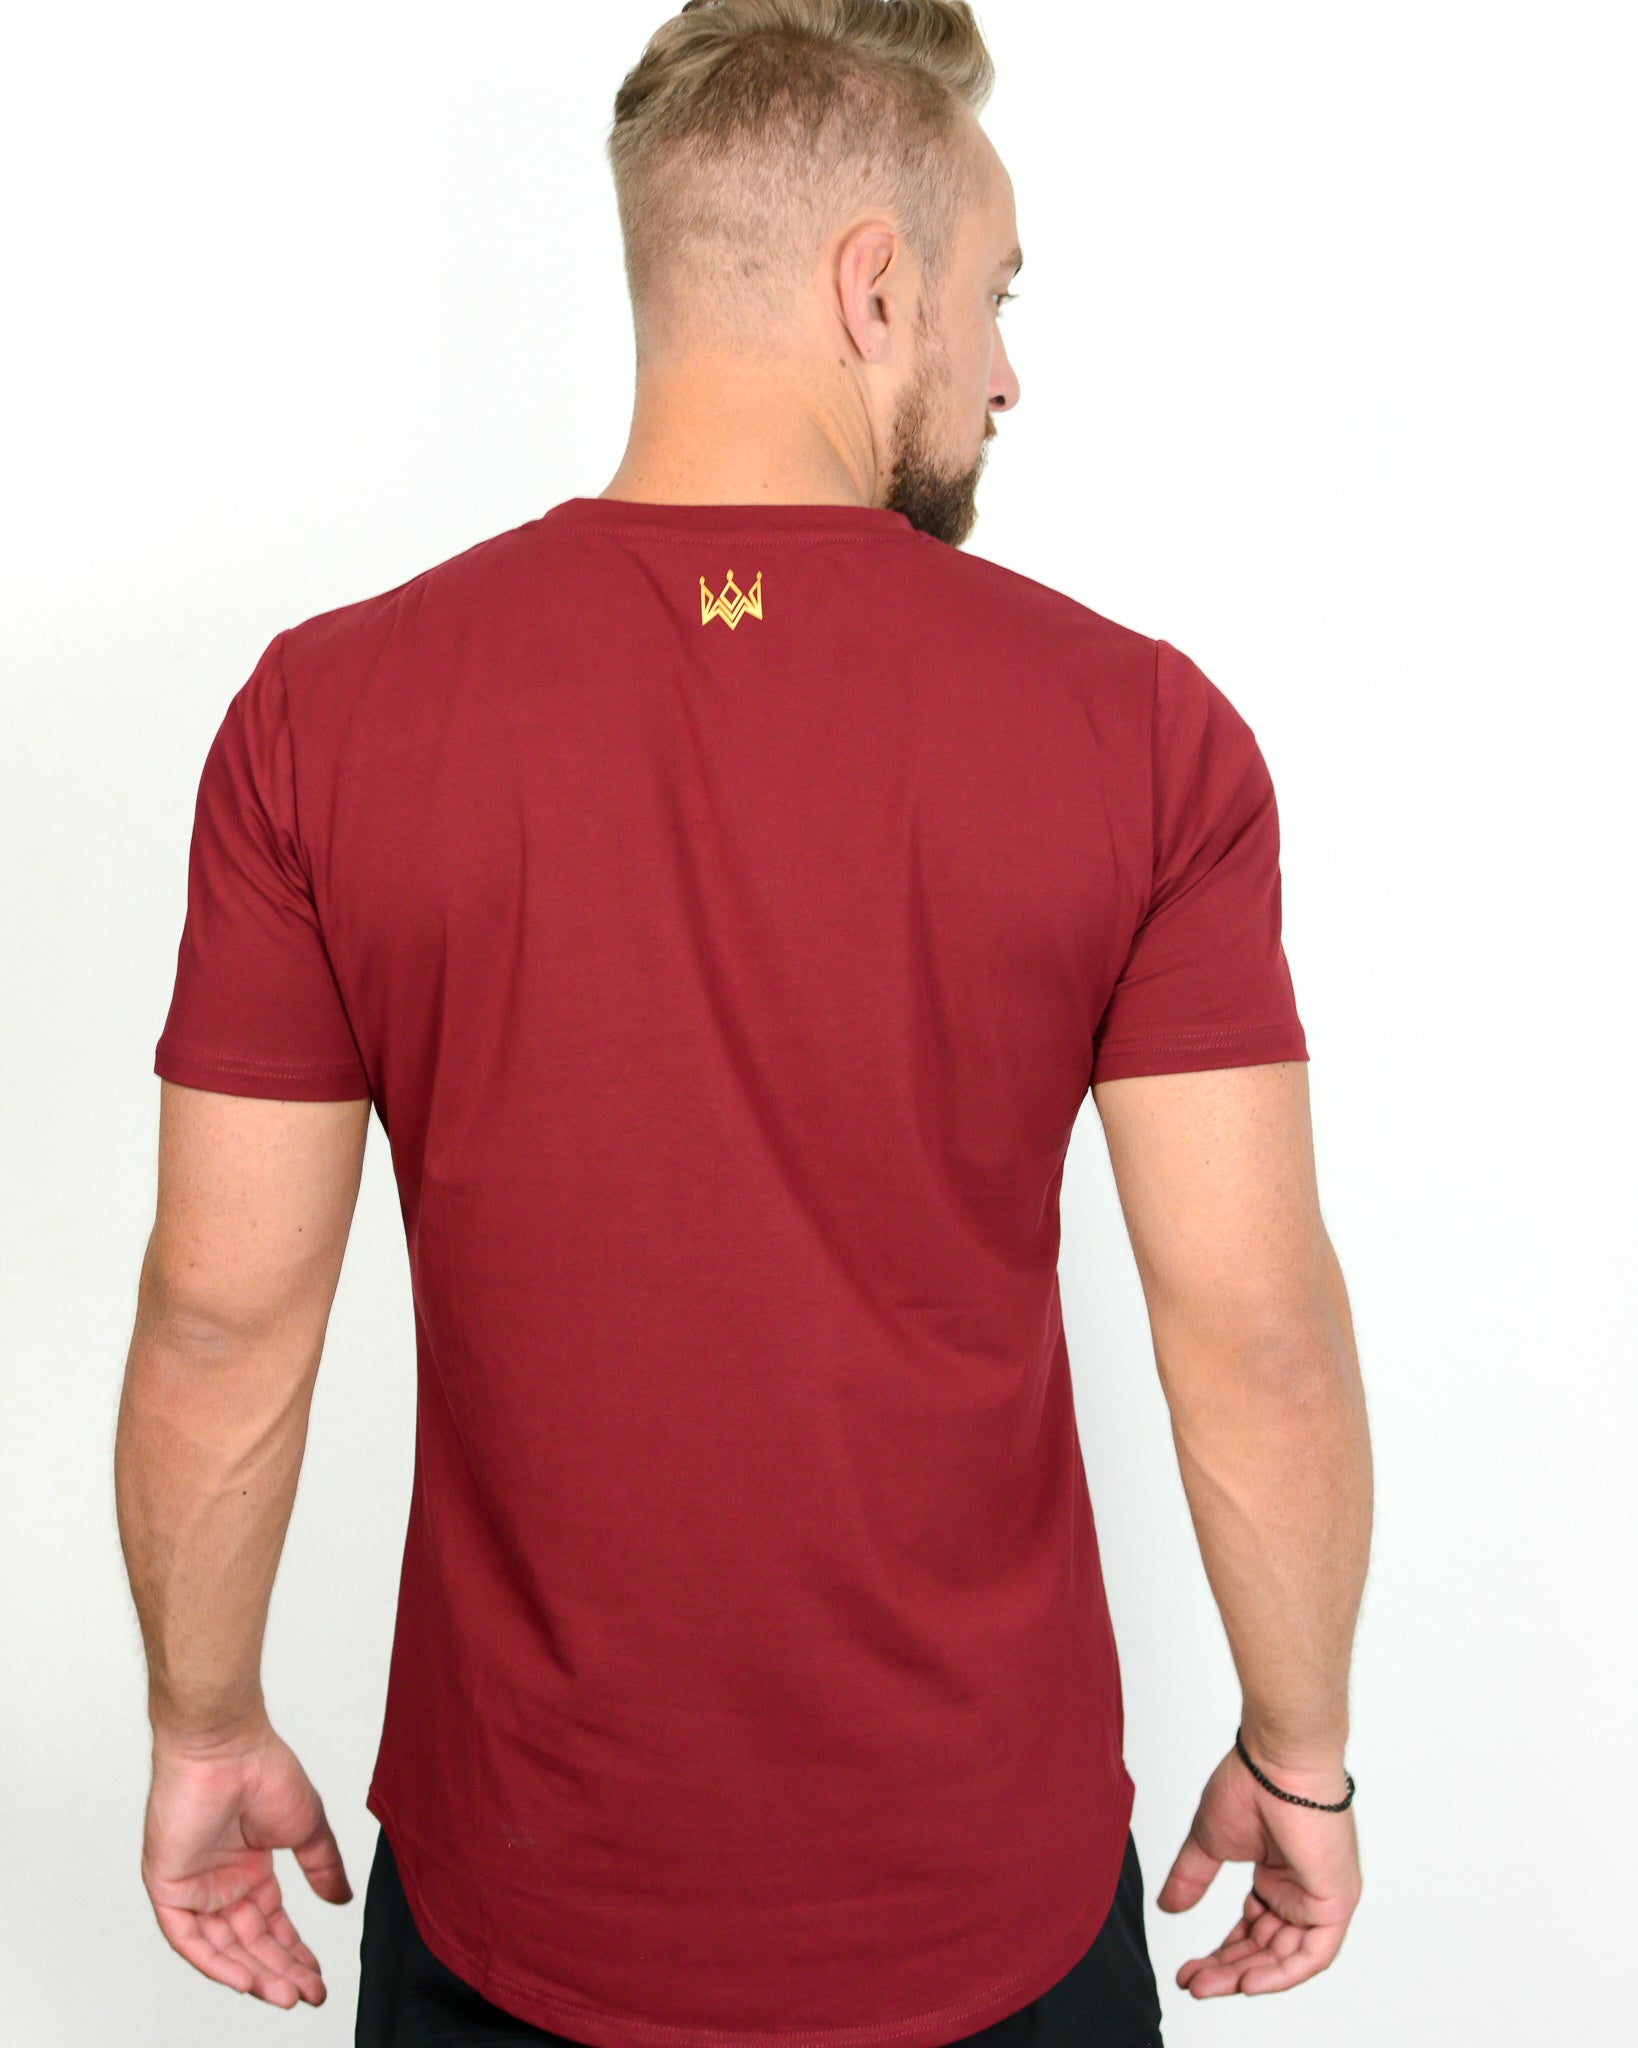 E-Lite Shirt - Burgundy